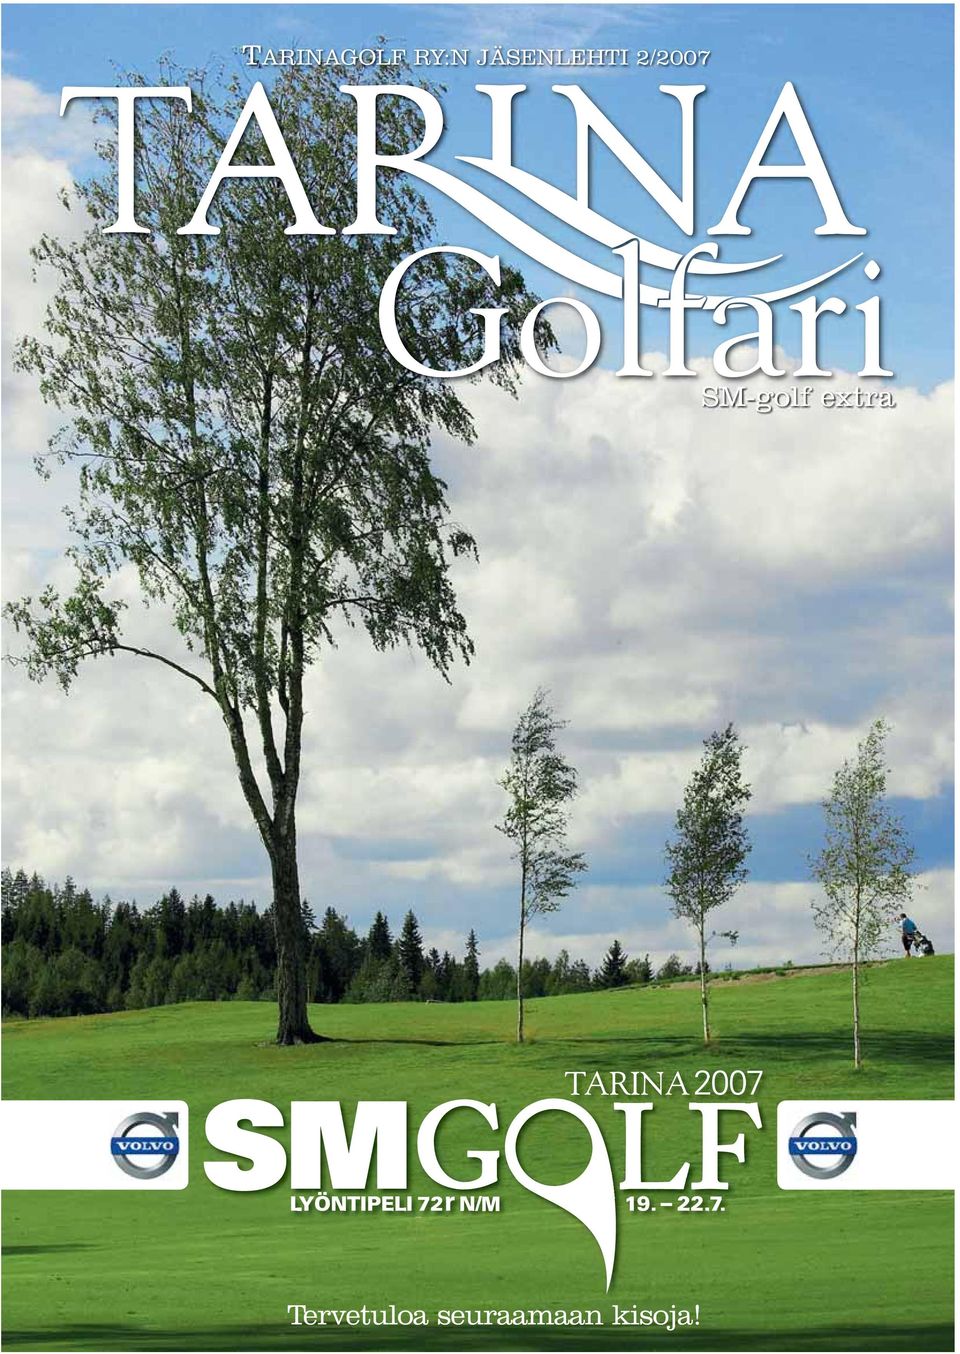 SM-golf extra